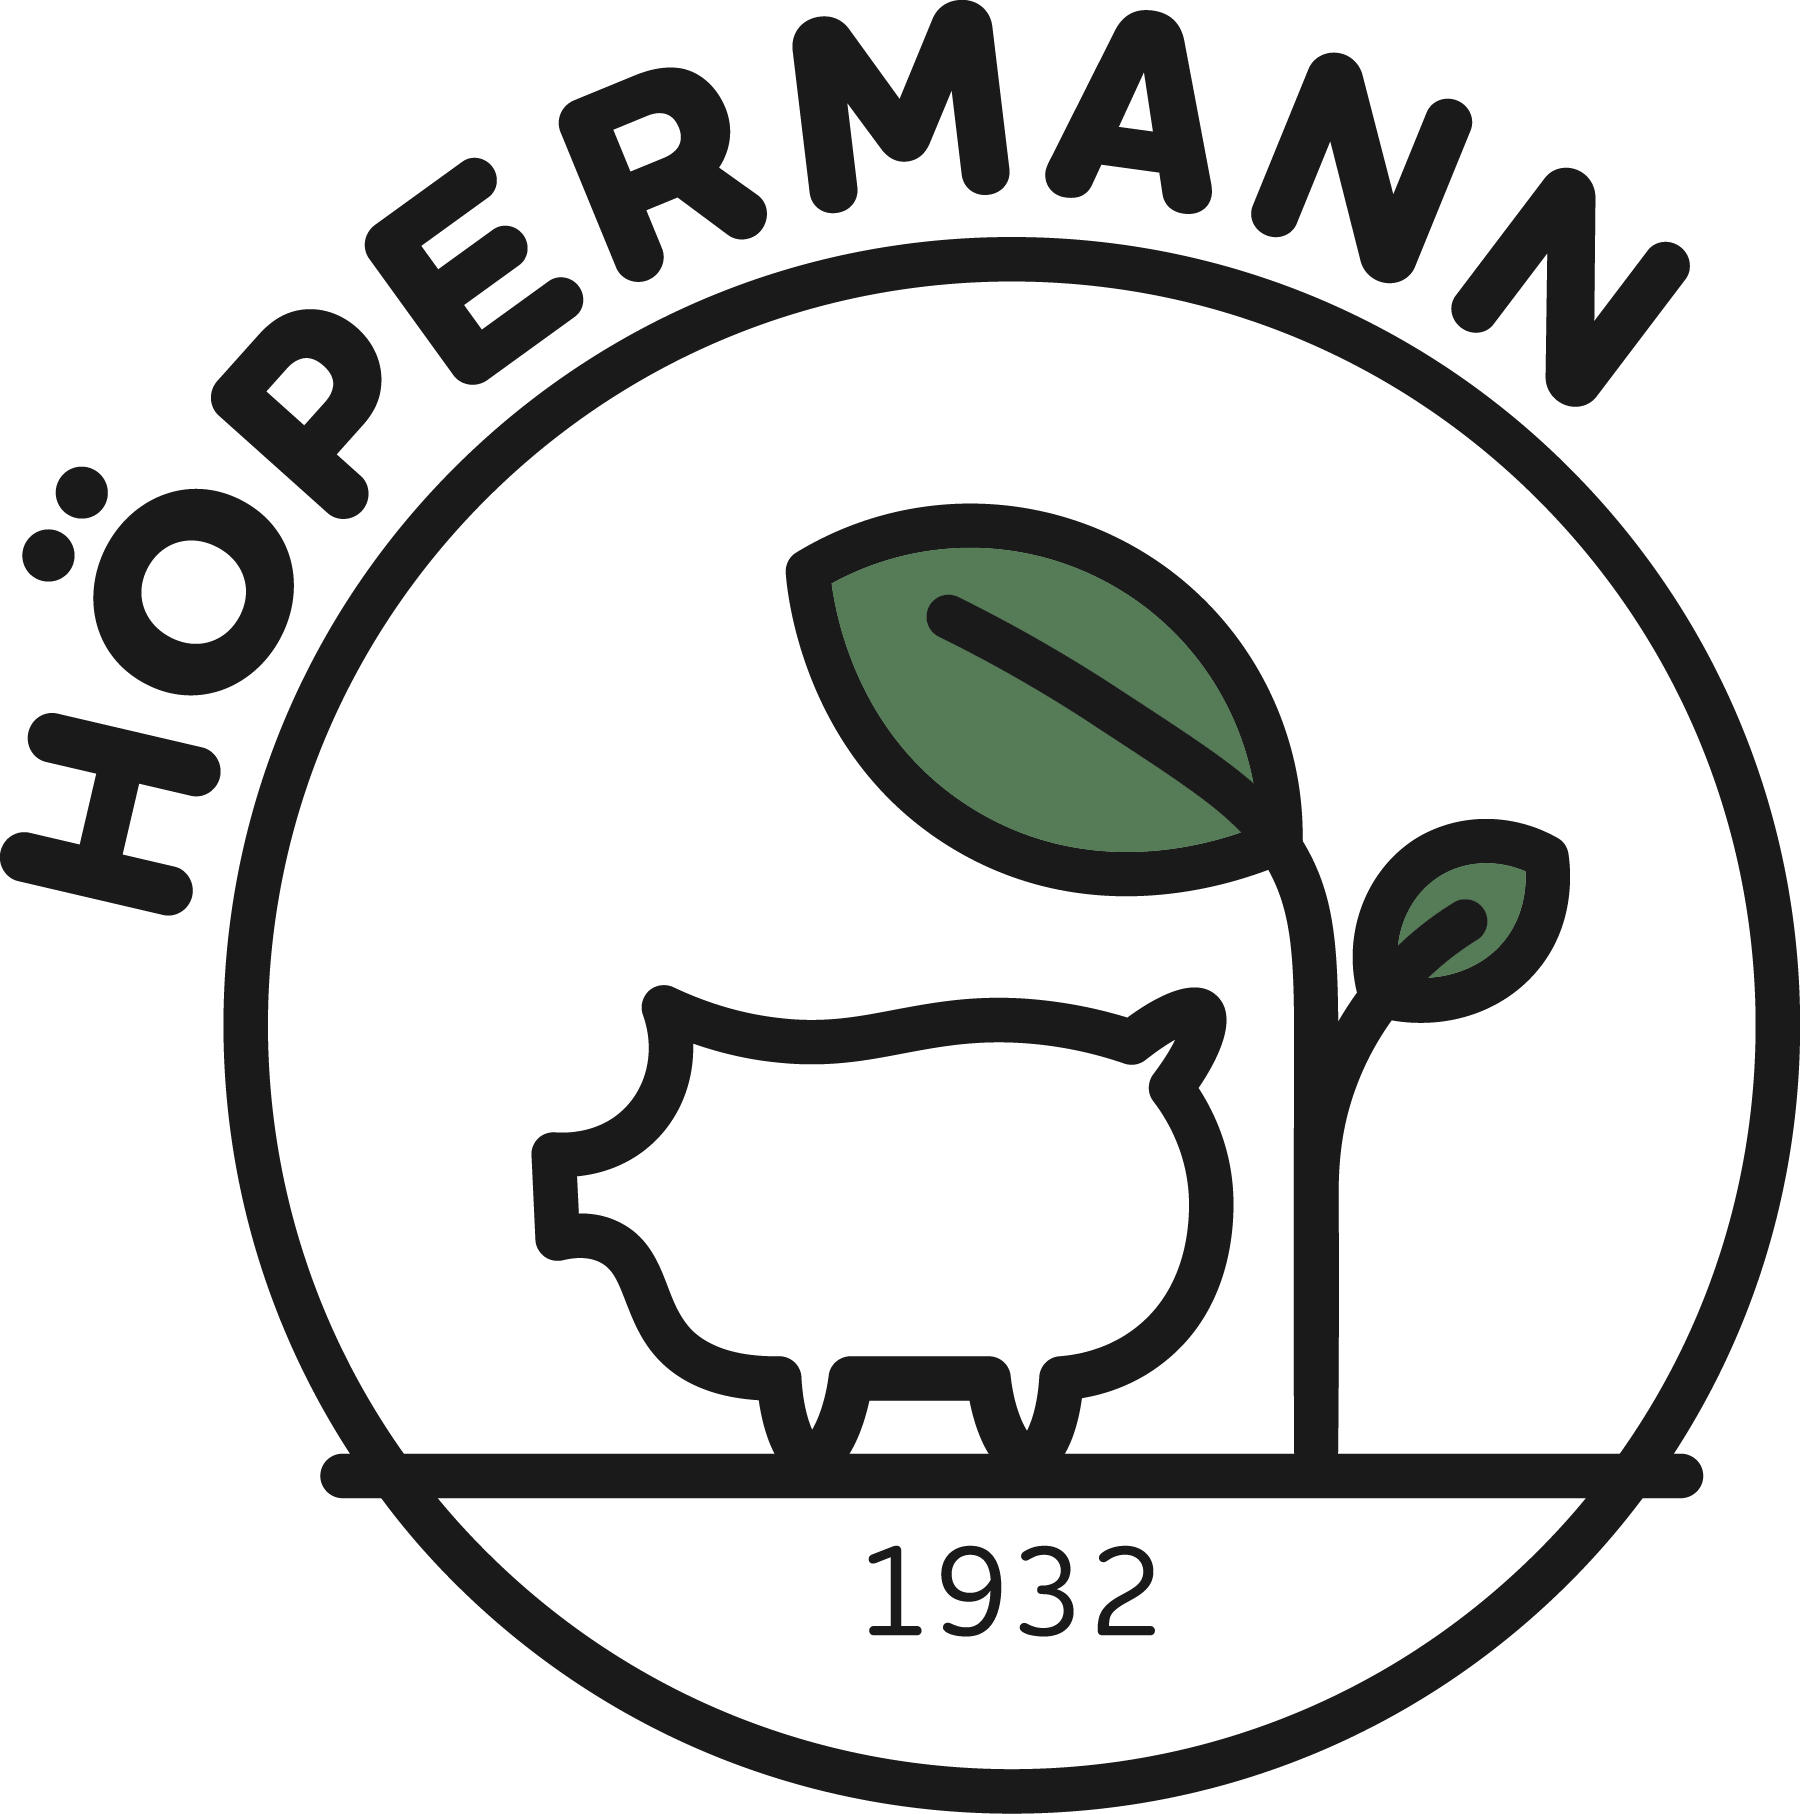 Höpermann